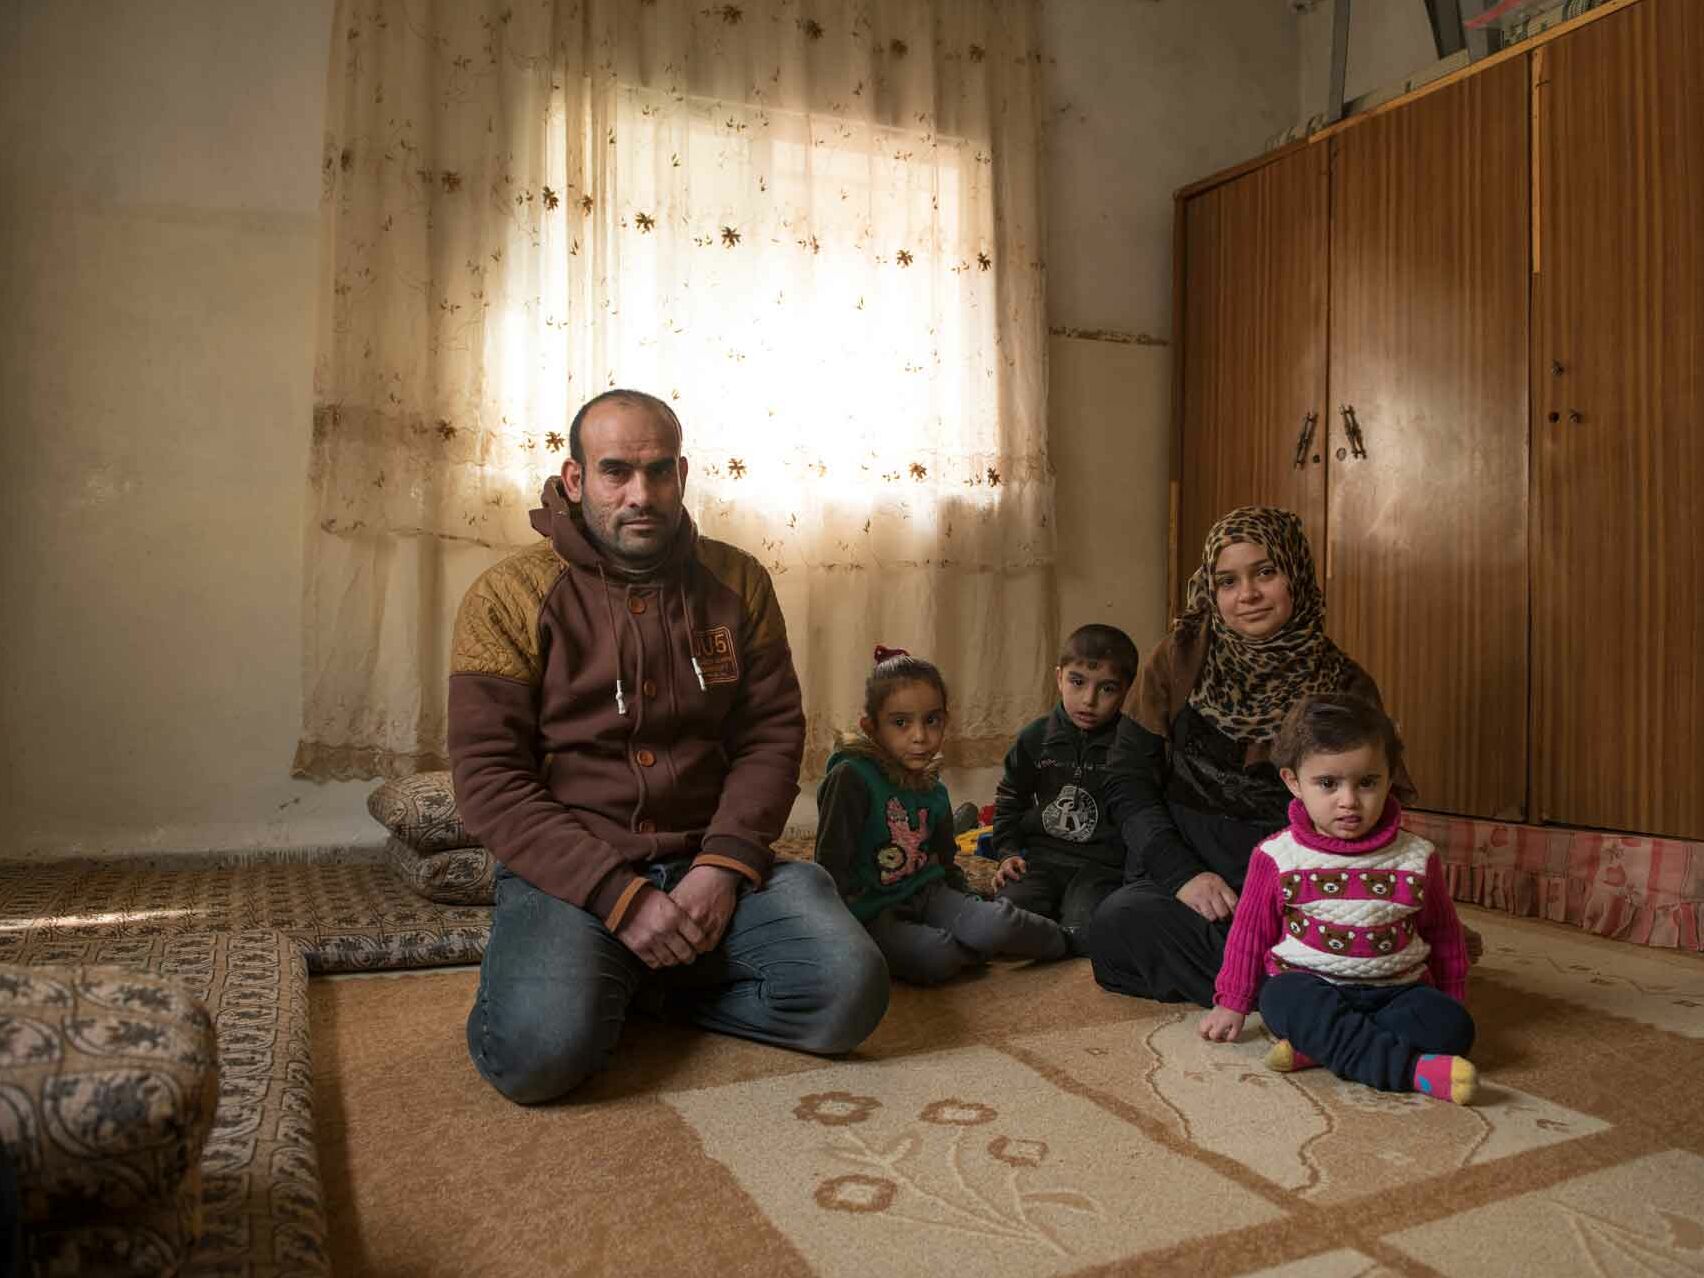 Flüchtlingsfamilie in Wohnung in Jordanien